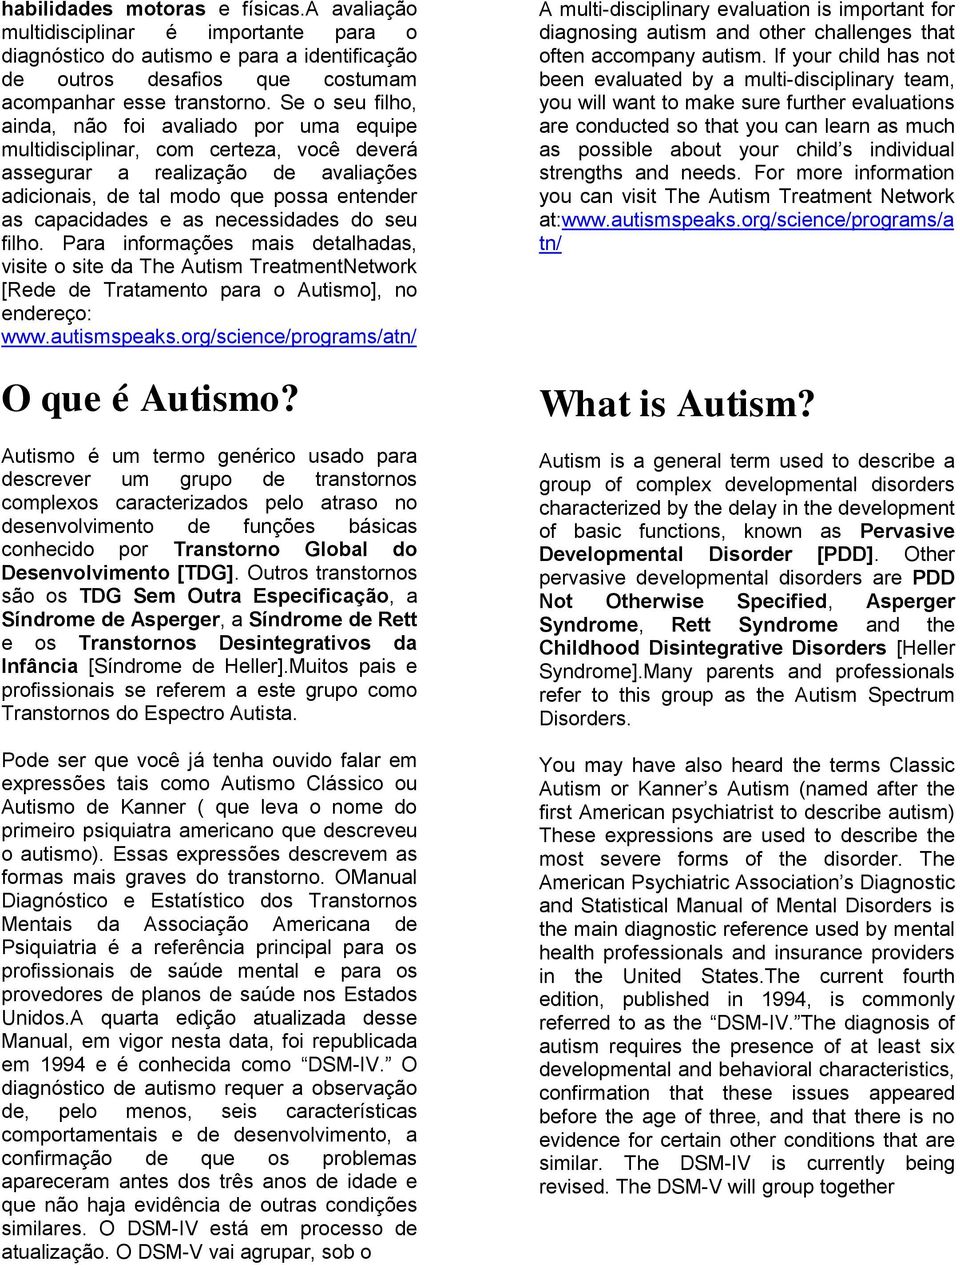 necessidades do seu filho. Para informações mais detalhadas, visite o site da The Autism TreatmentNetwork [Rede de Tratamento para o Autismo], no endereço: www.autismspeaks.